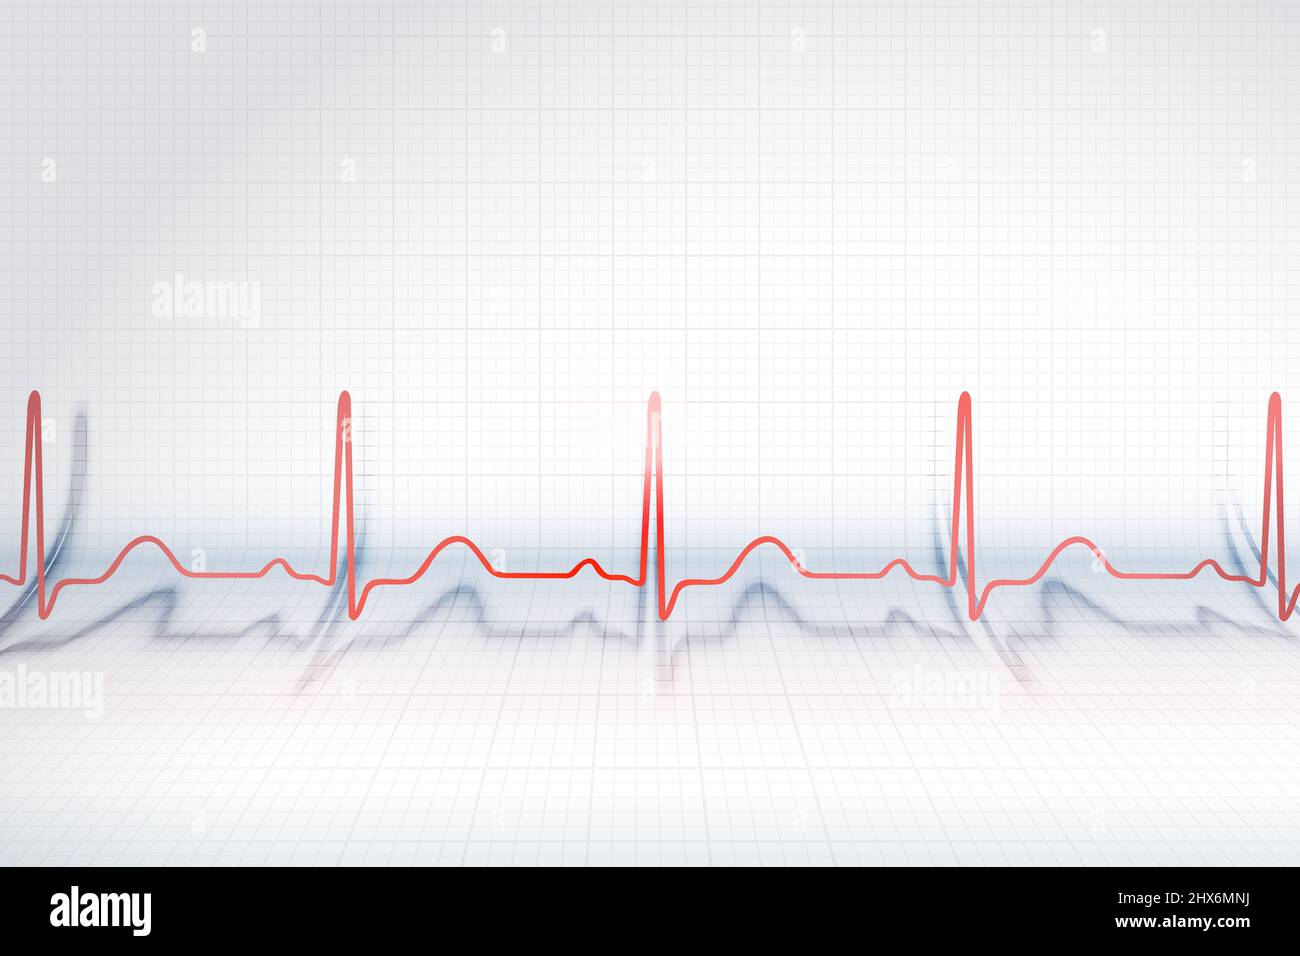 Rote Linie des EKG-Diagramms auf dem Hintergrund des gebogenen Plotzpapiers/ Stockfoto